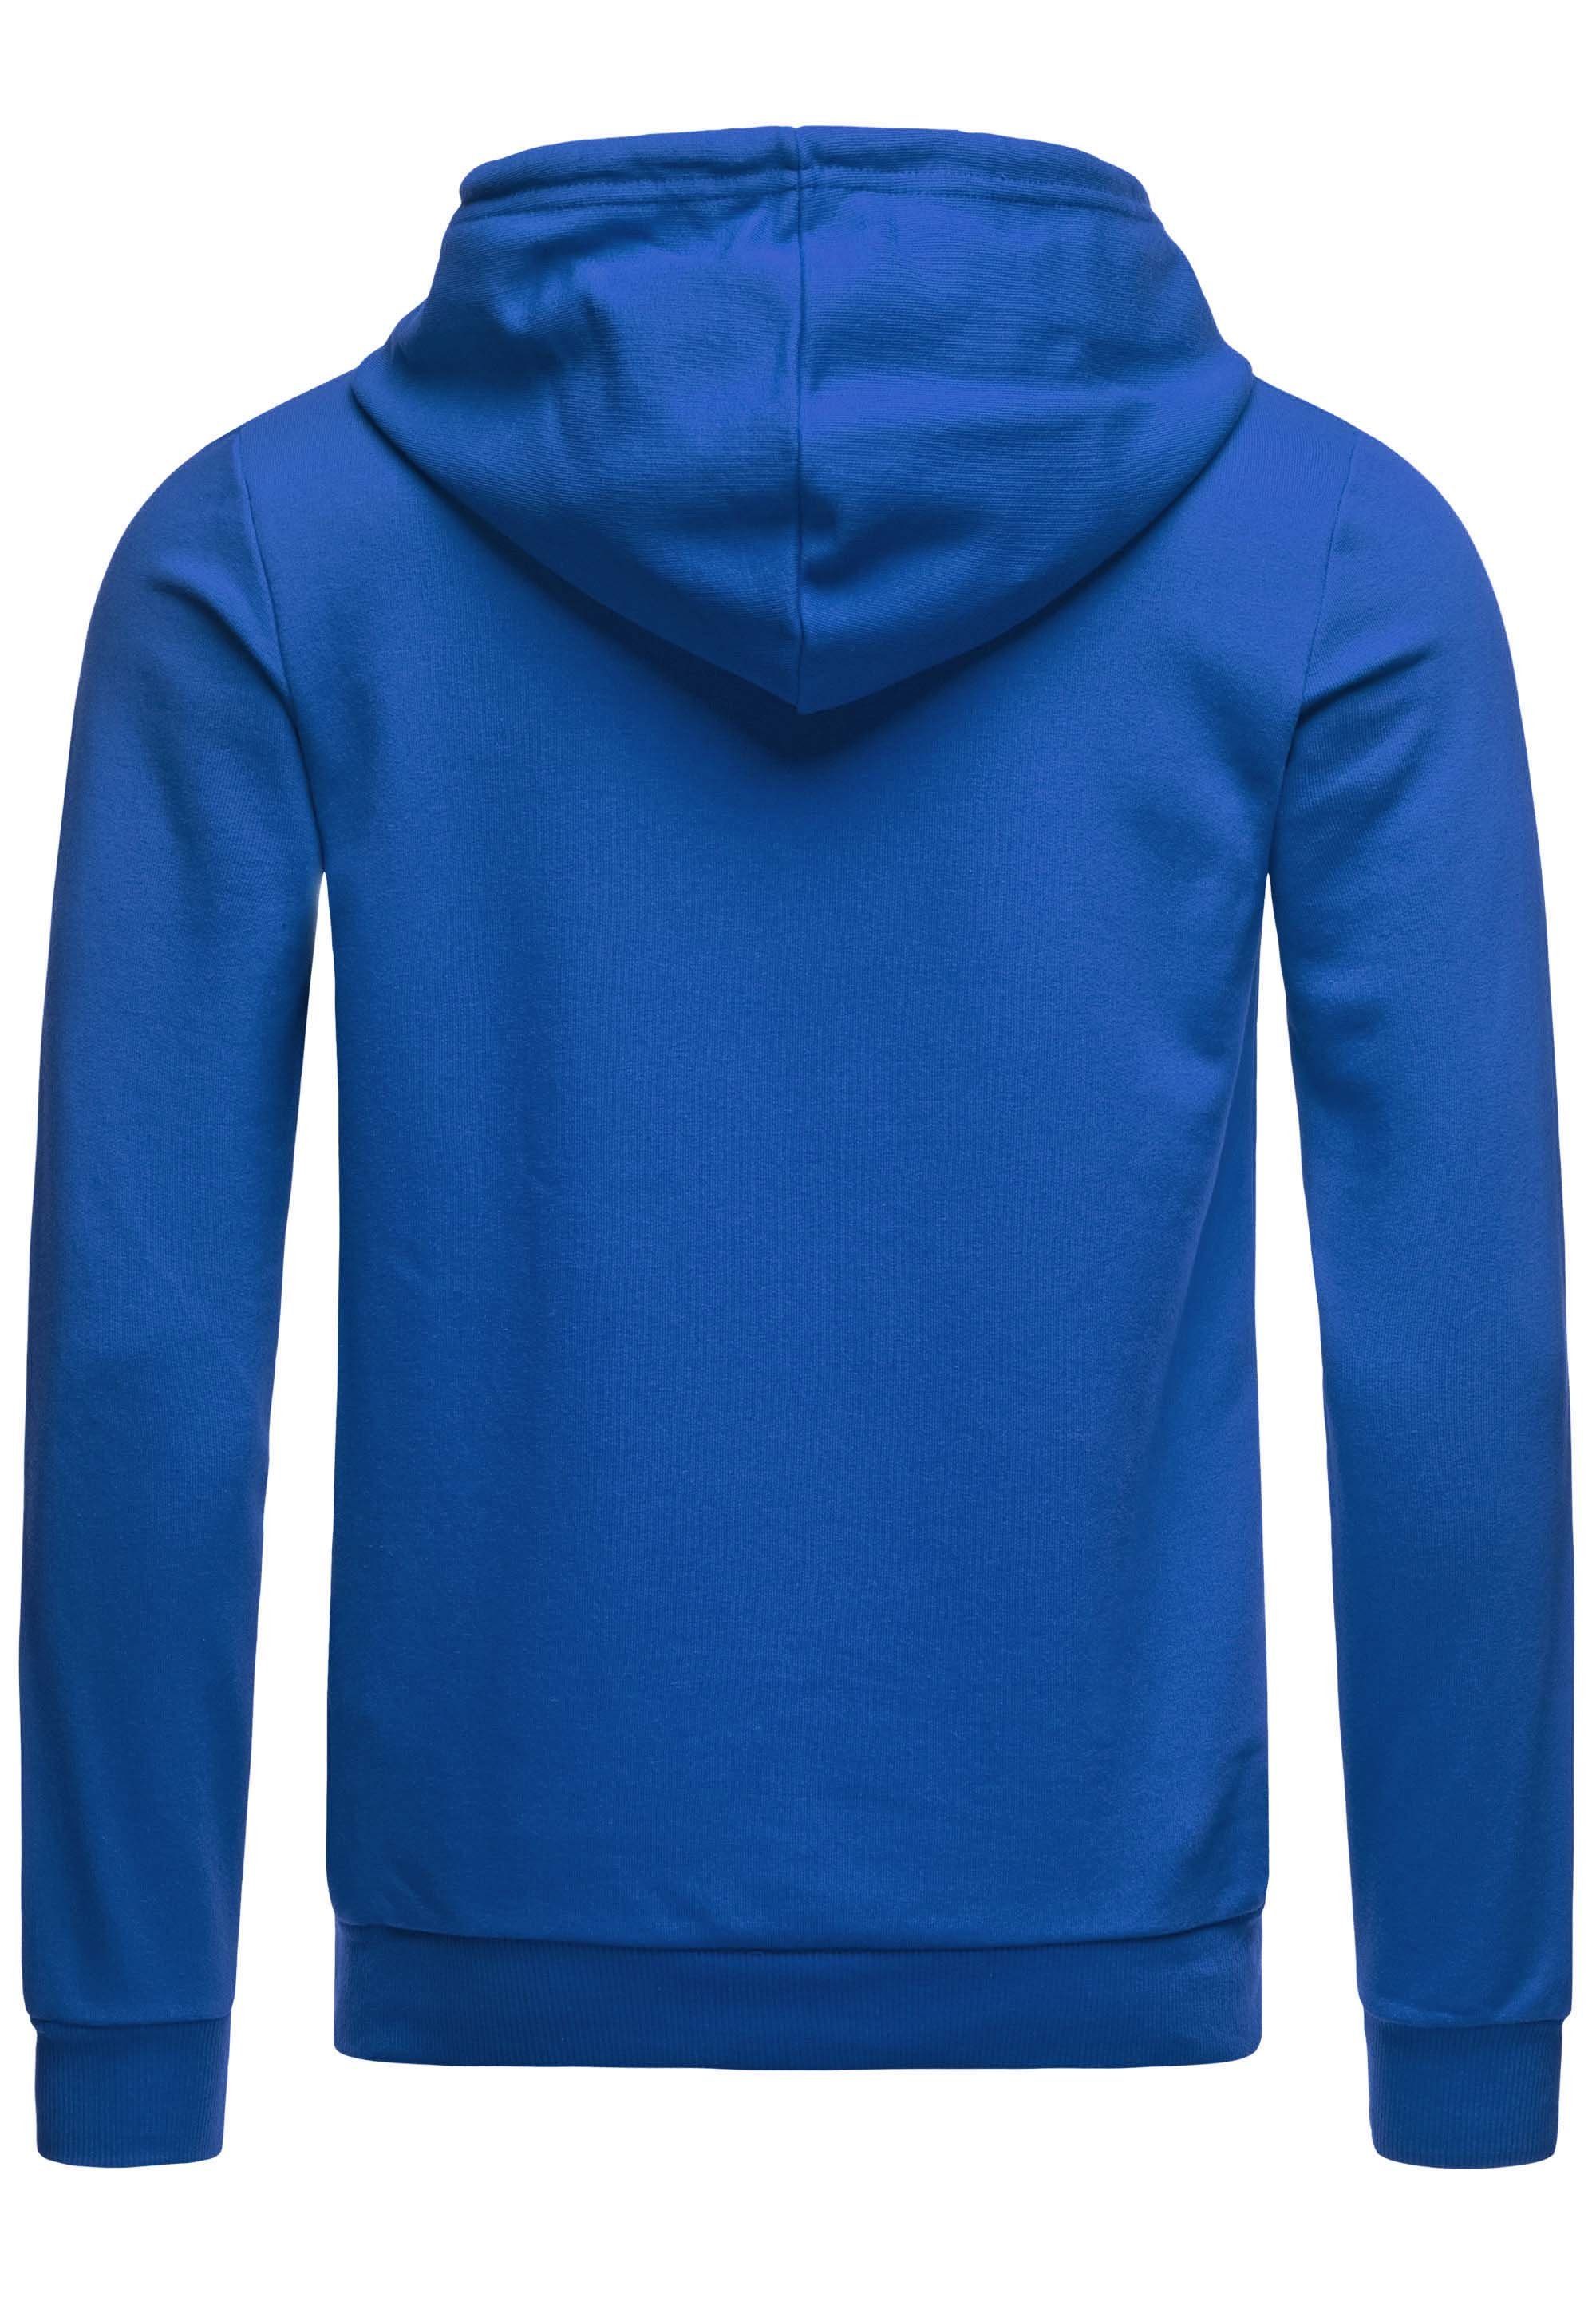 Premium mit Kapuzensweatshirt RedBridge Kängurutasche Qualität Hoodie Saxeblau